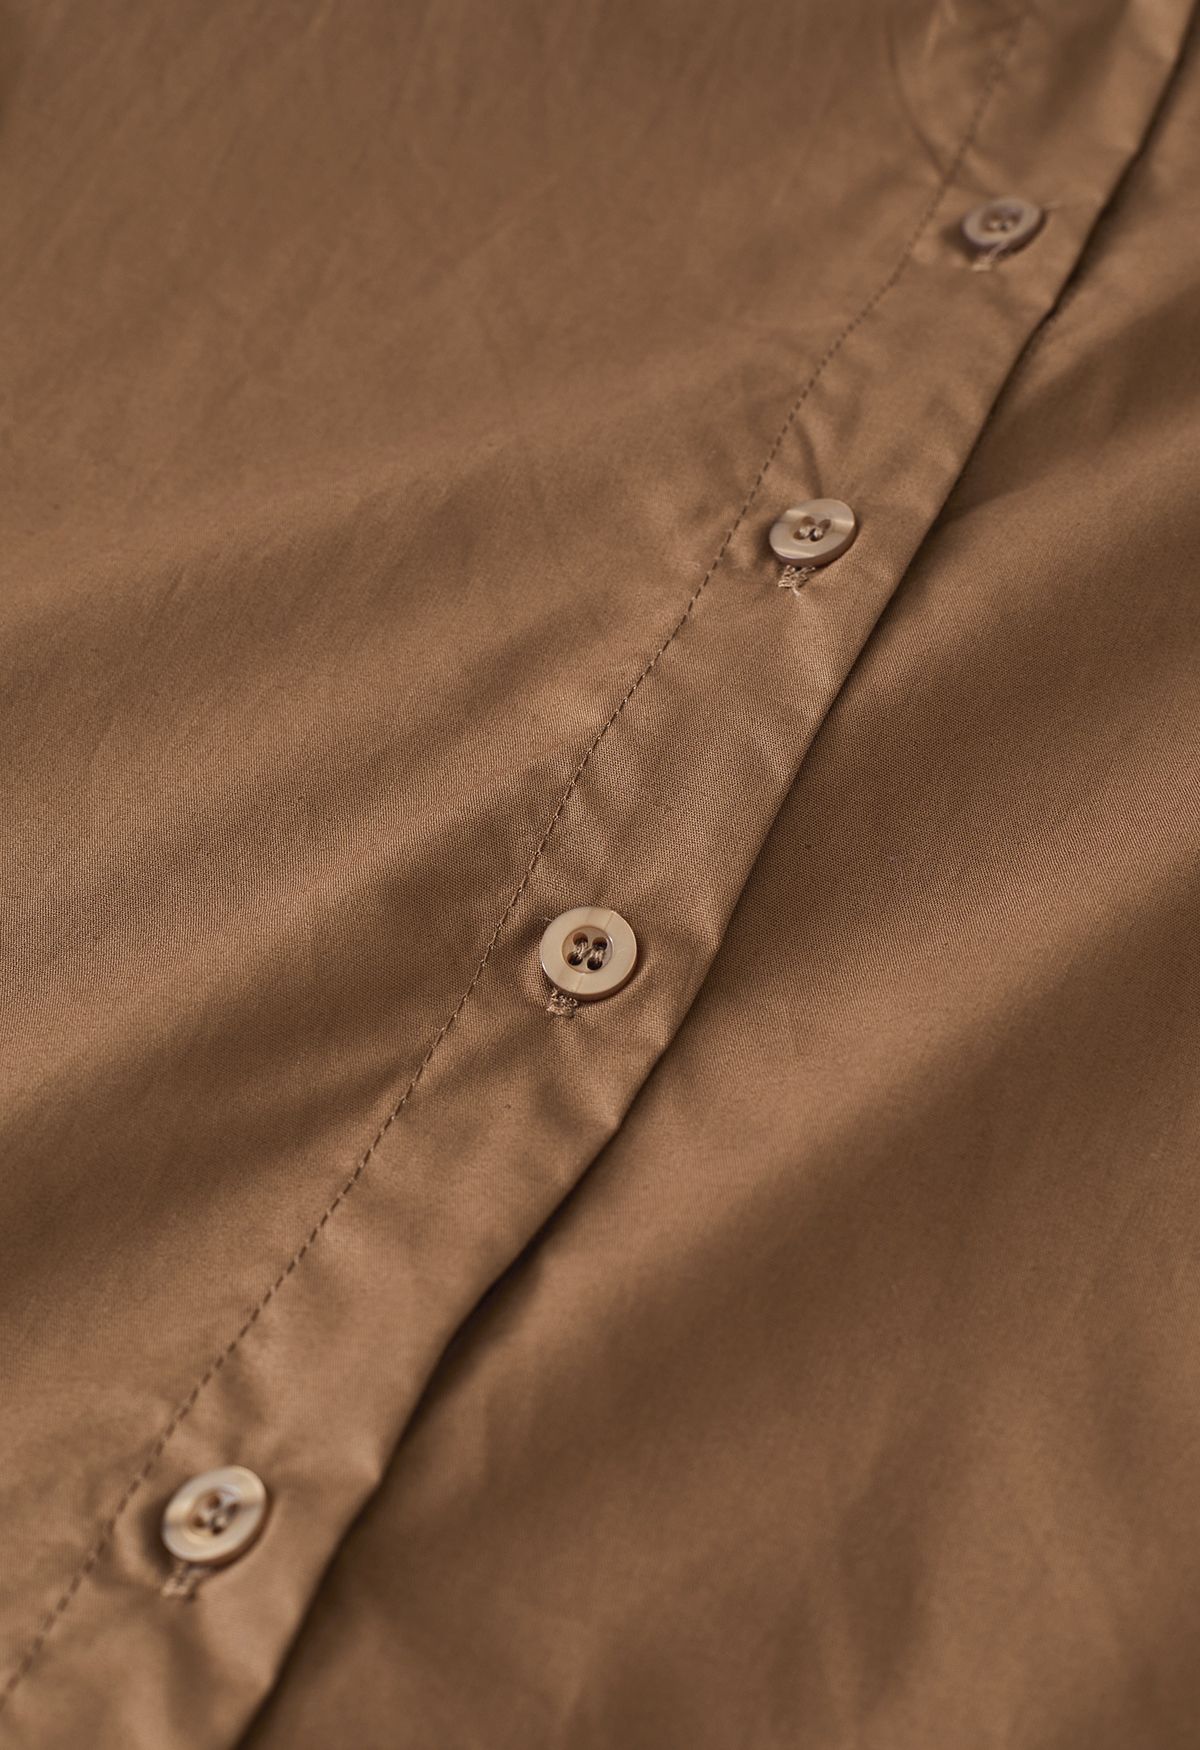 Camisa de algodón con botones y cuello en punta en marrón